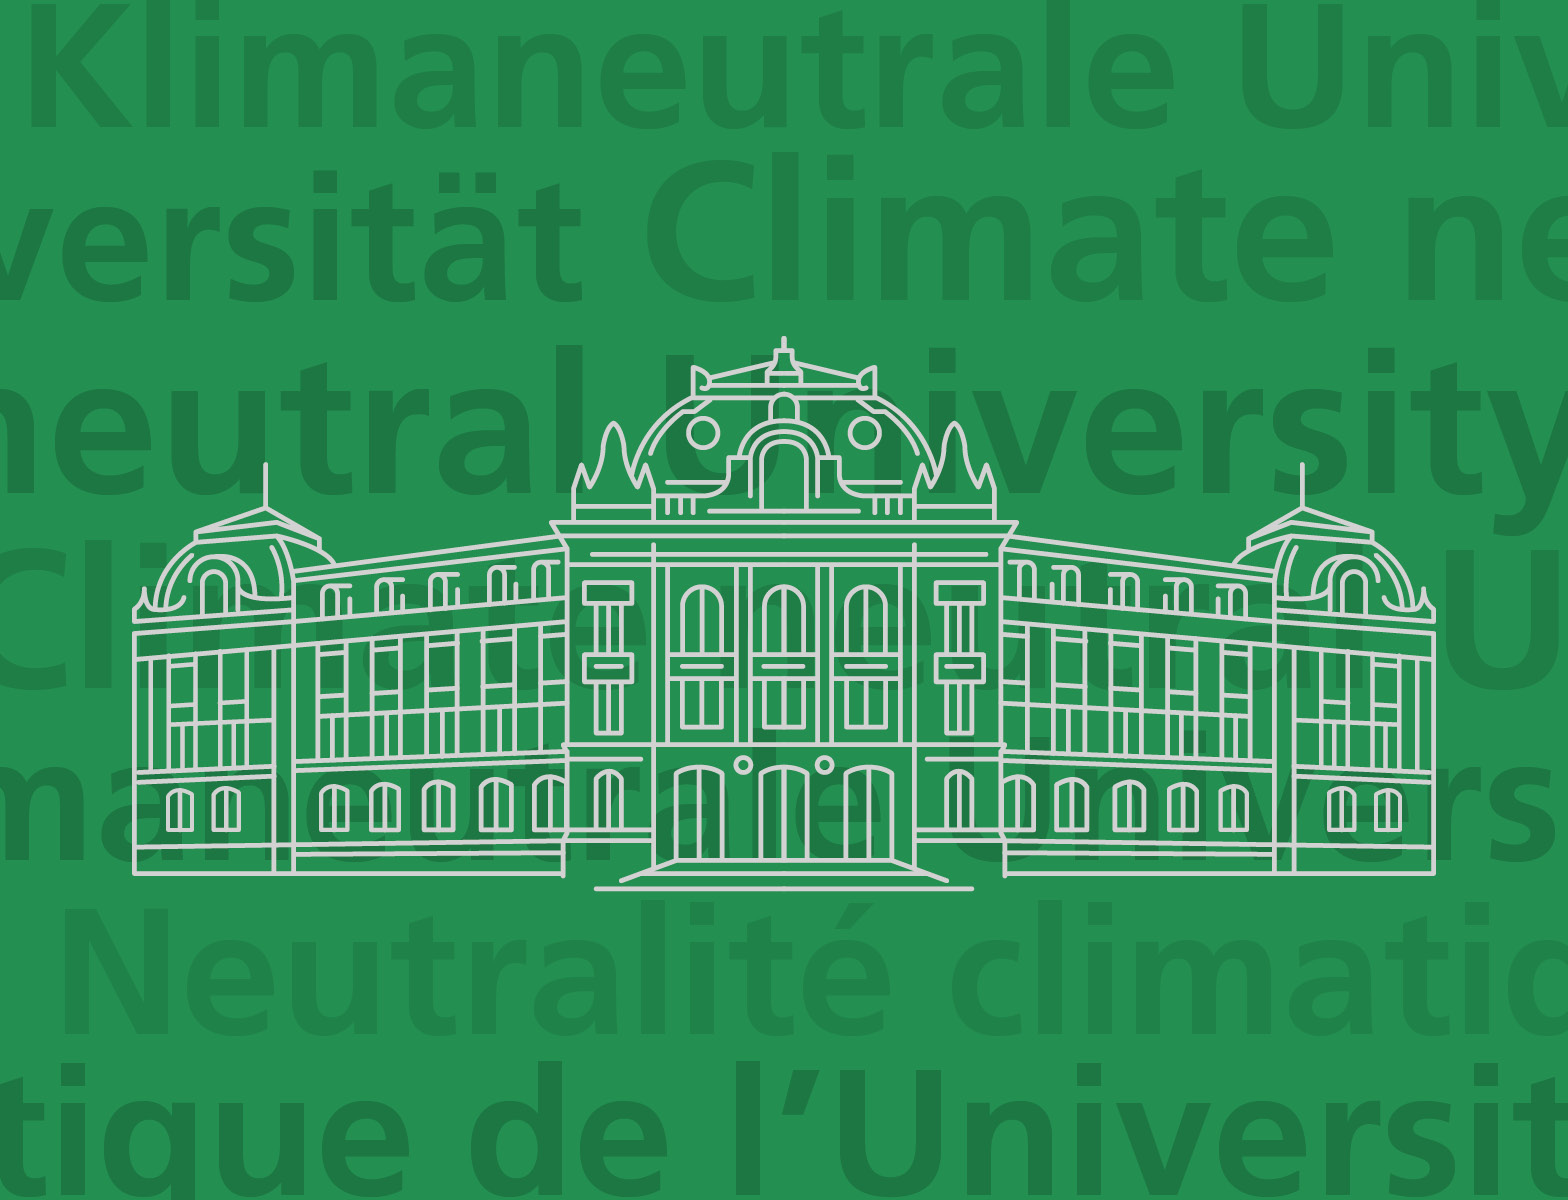 Bild der Universität Bern